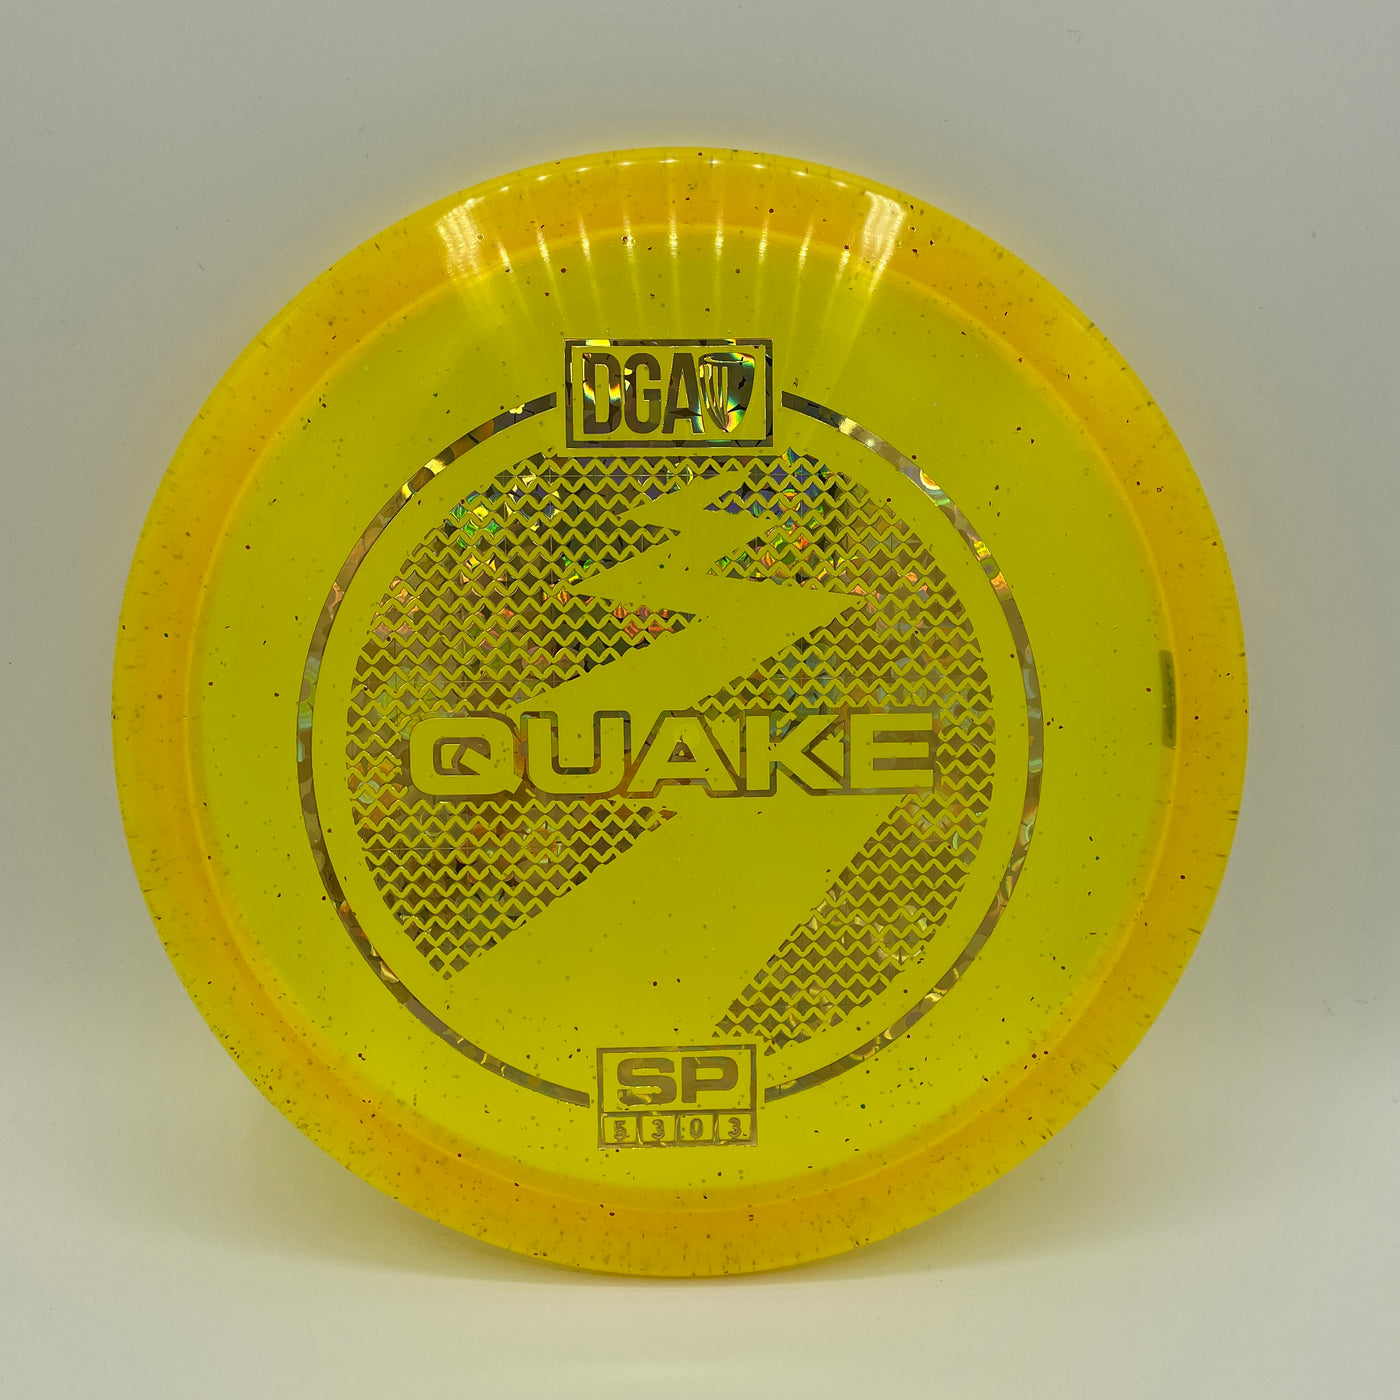 SP Quake